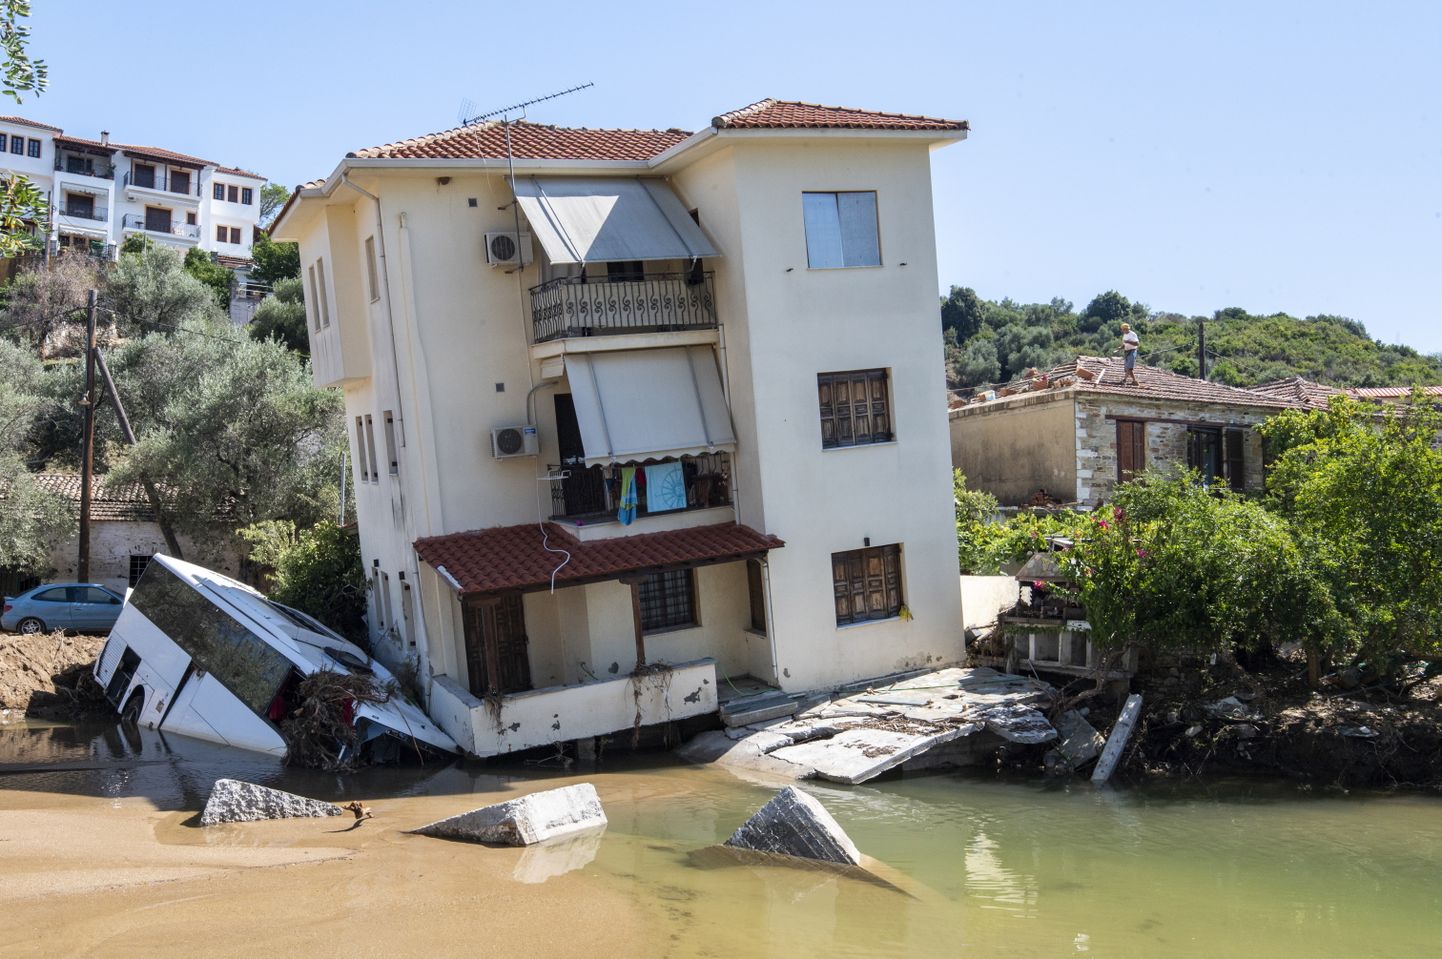 Tulvakahjud Kreeka keskosas. Foto on illustratiivne.